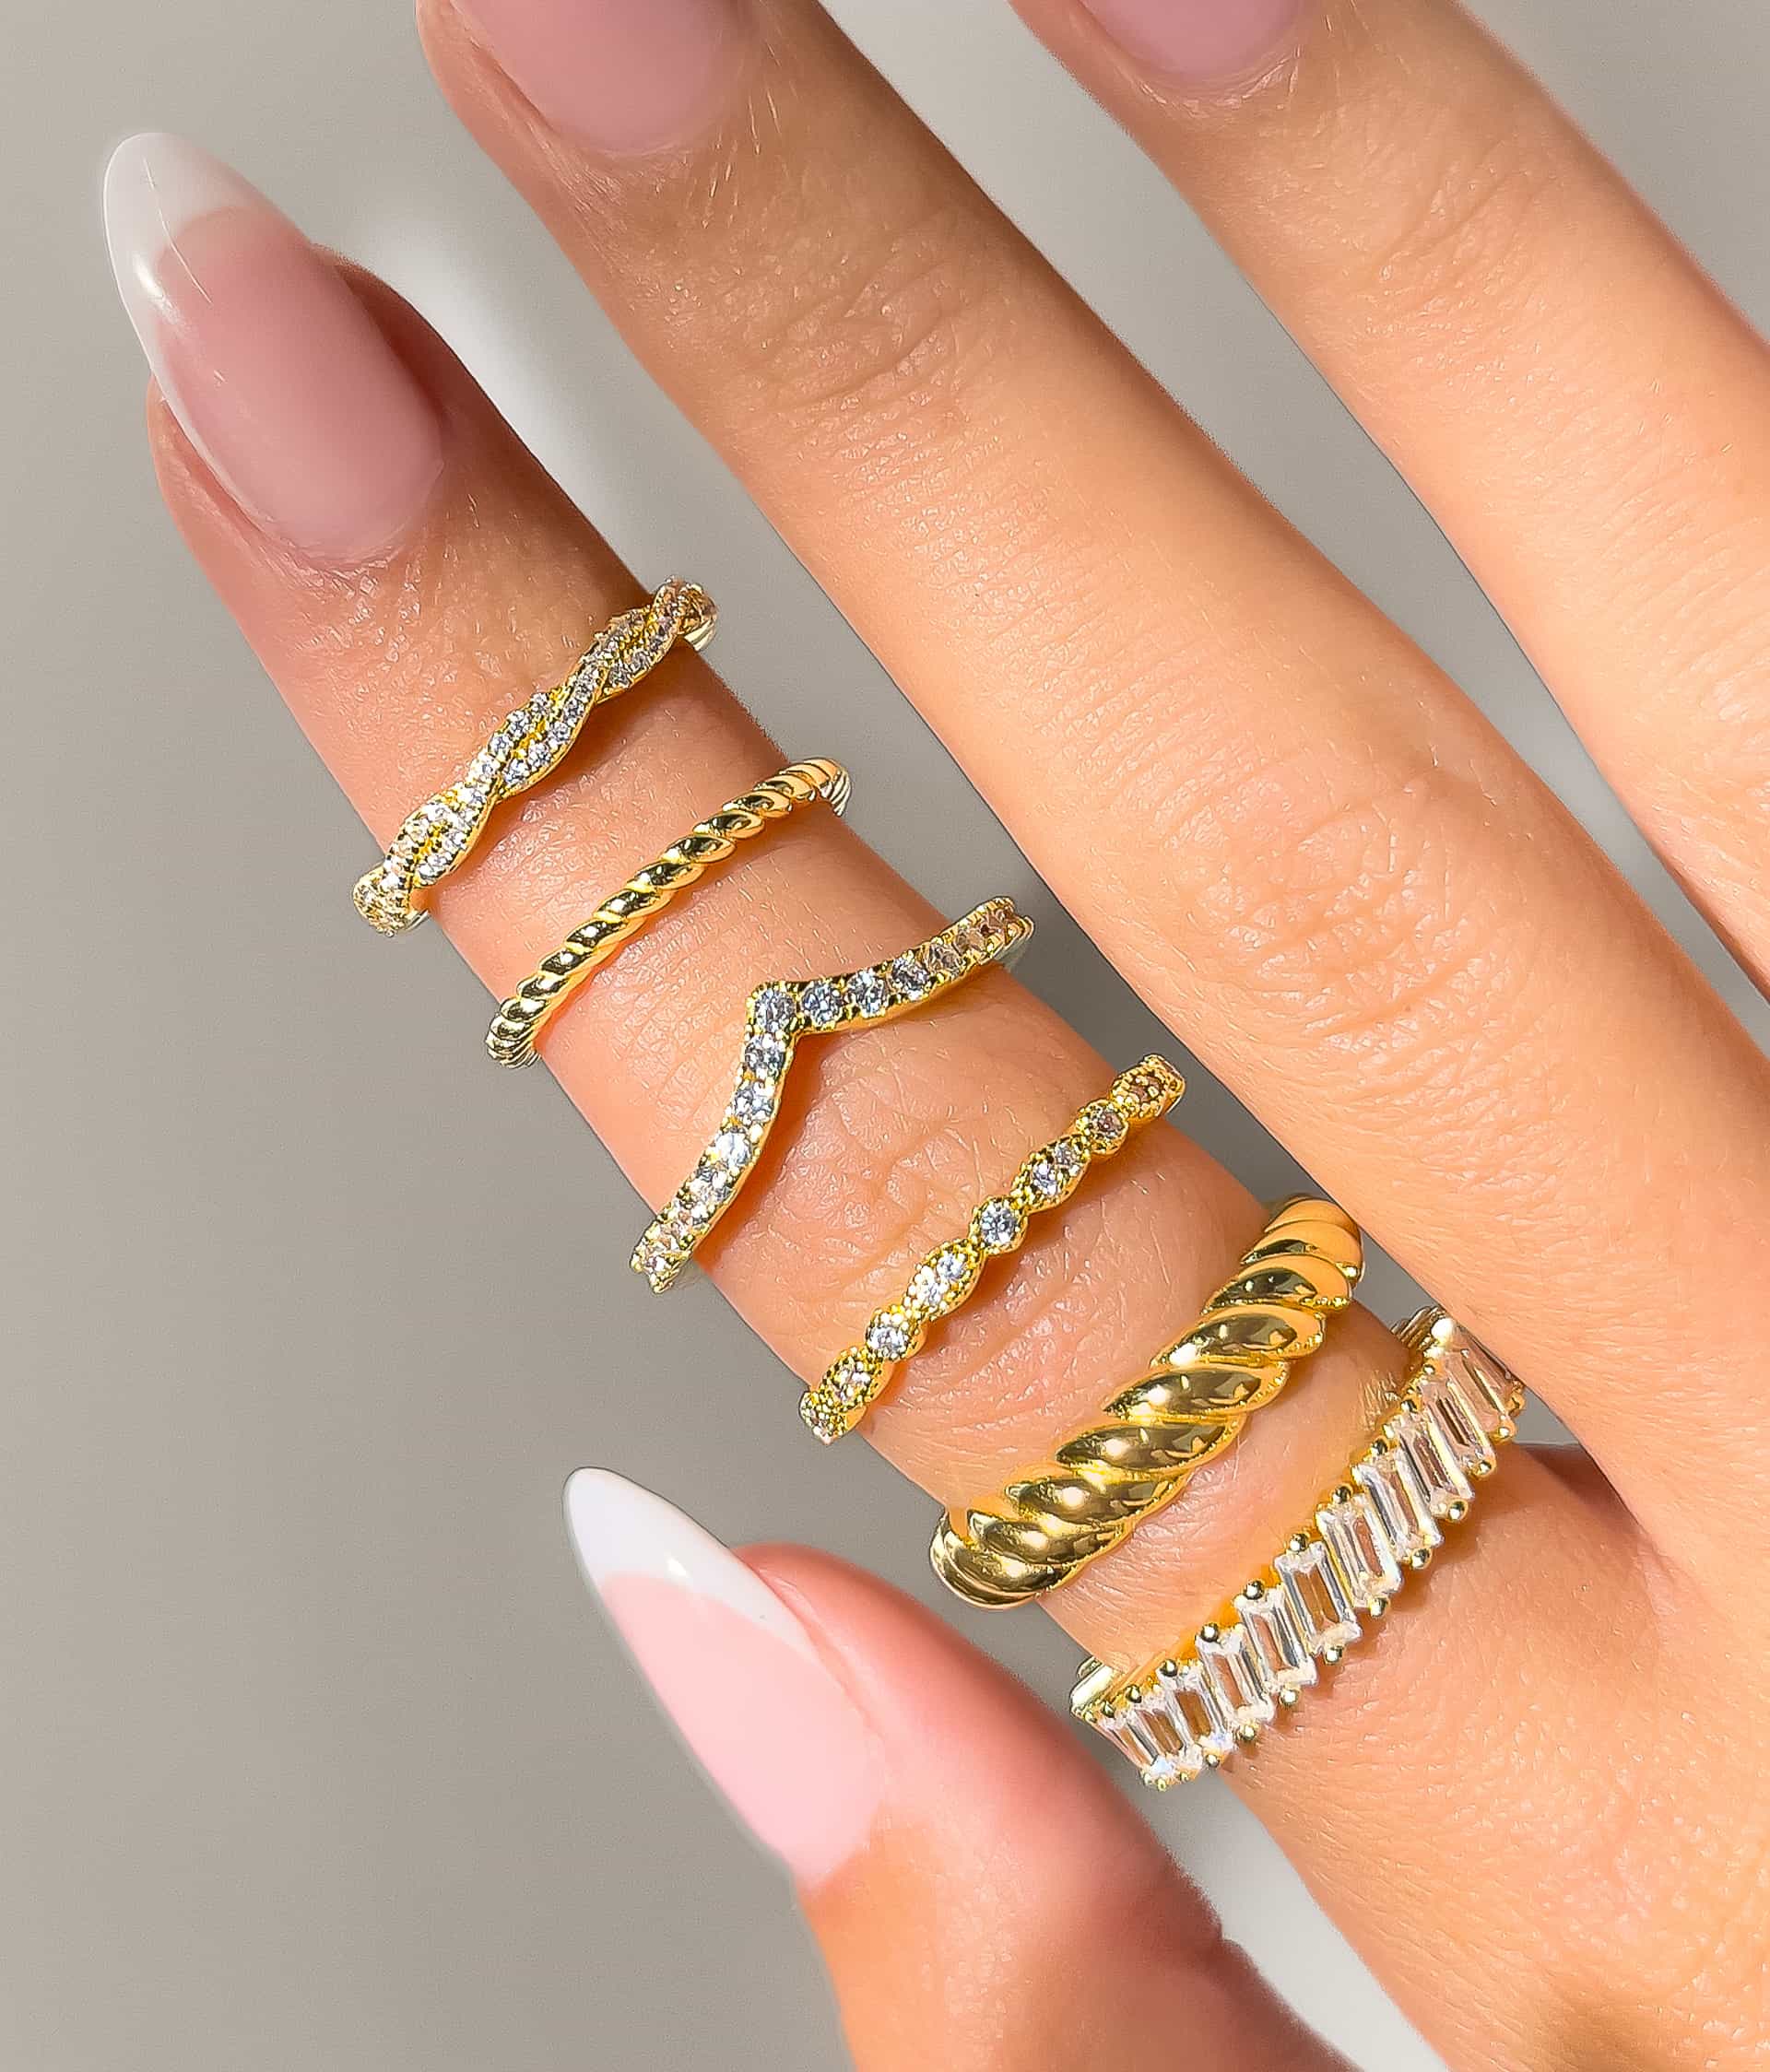 woman wearing gold wedding ring stacks